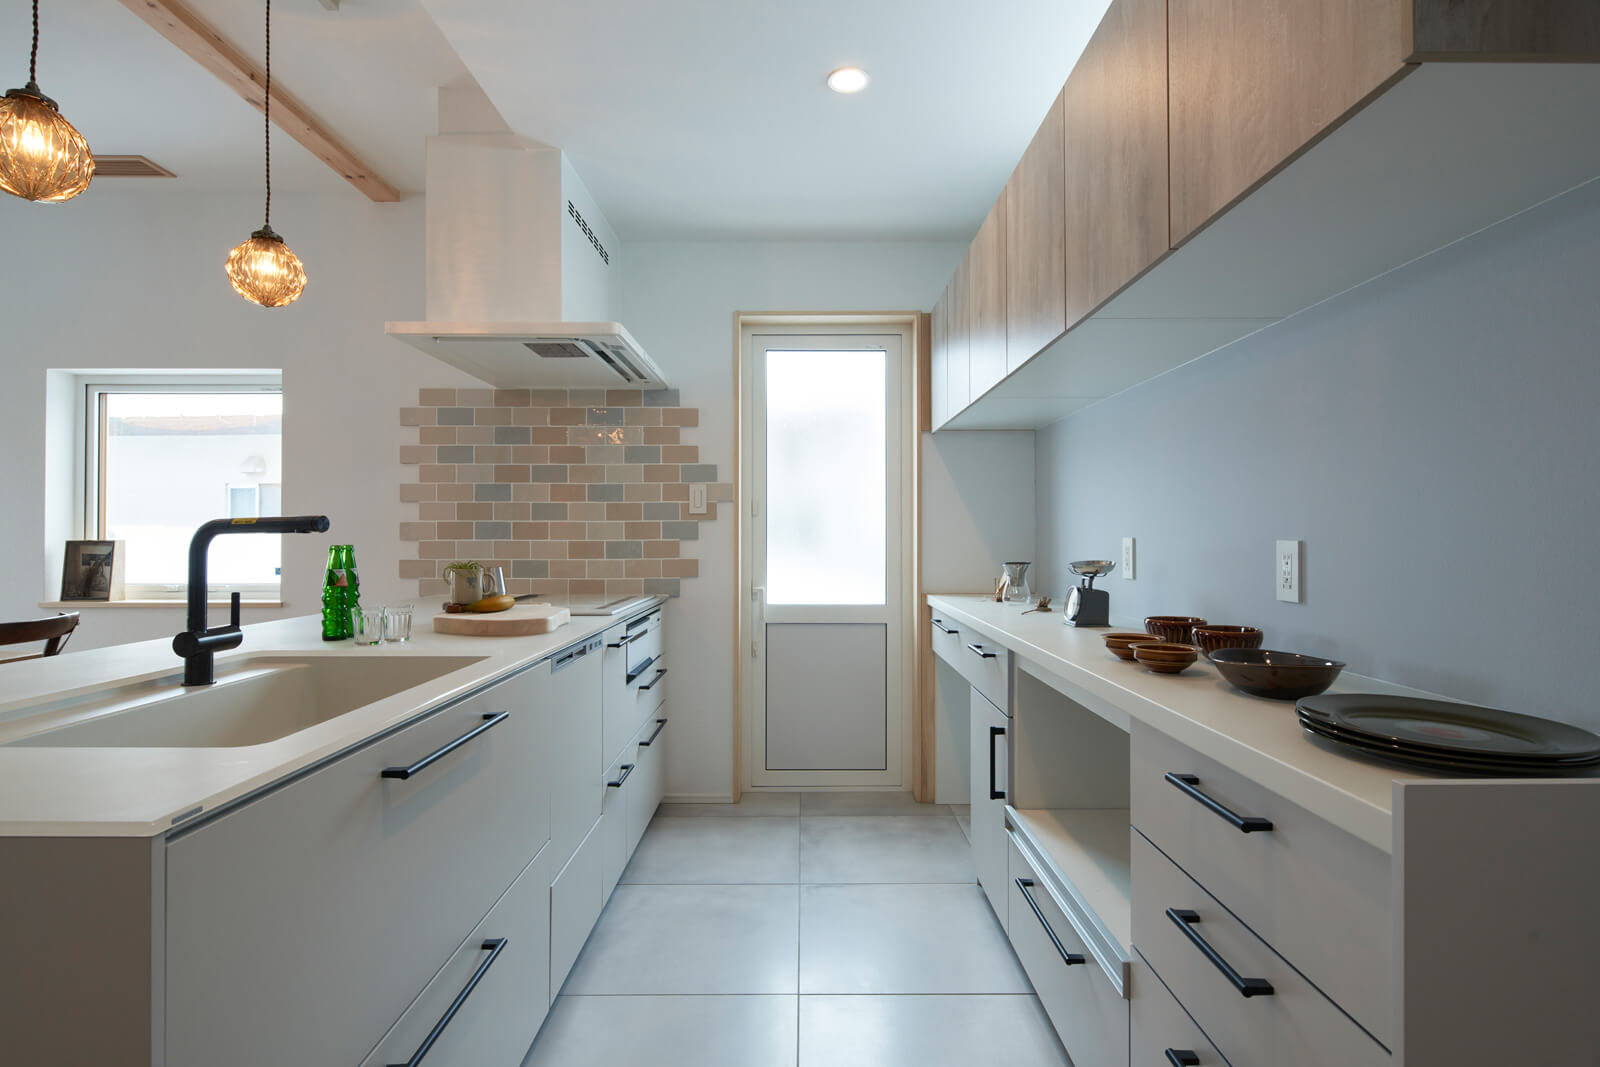 幅を広く取ったキッチンは、ナチュラルな色味に加えテラスドアからの光でより明るい空間に